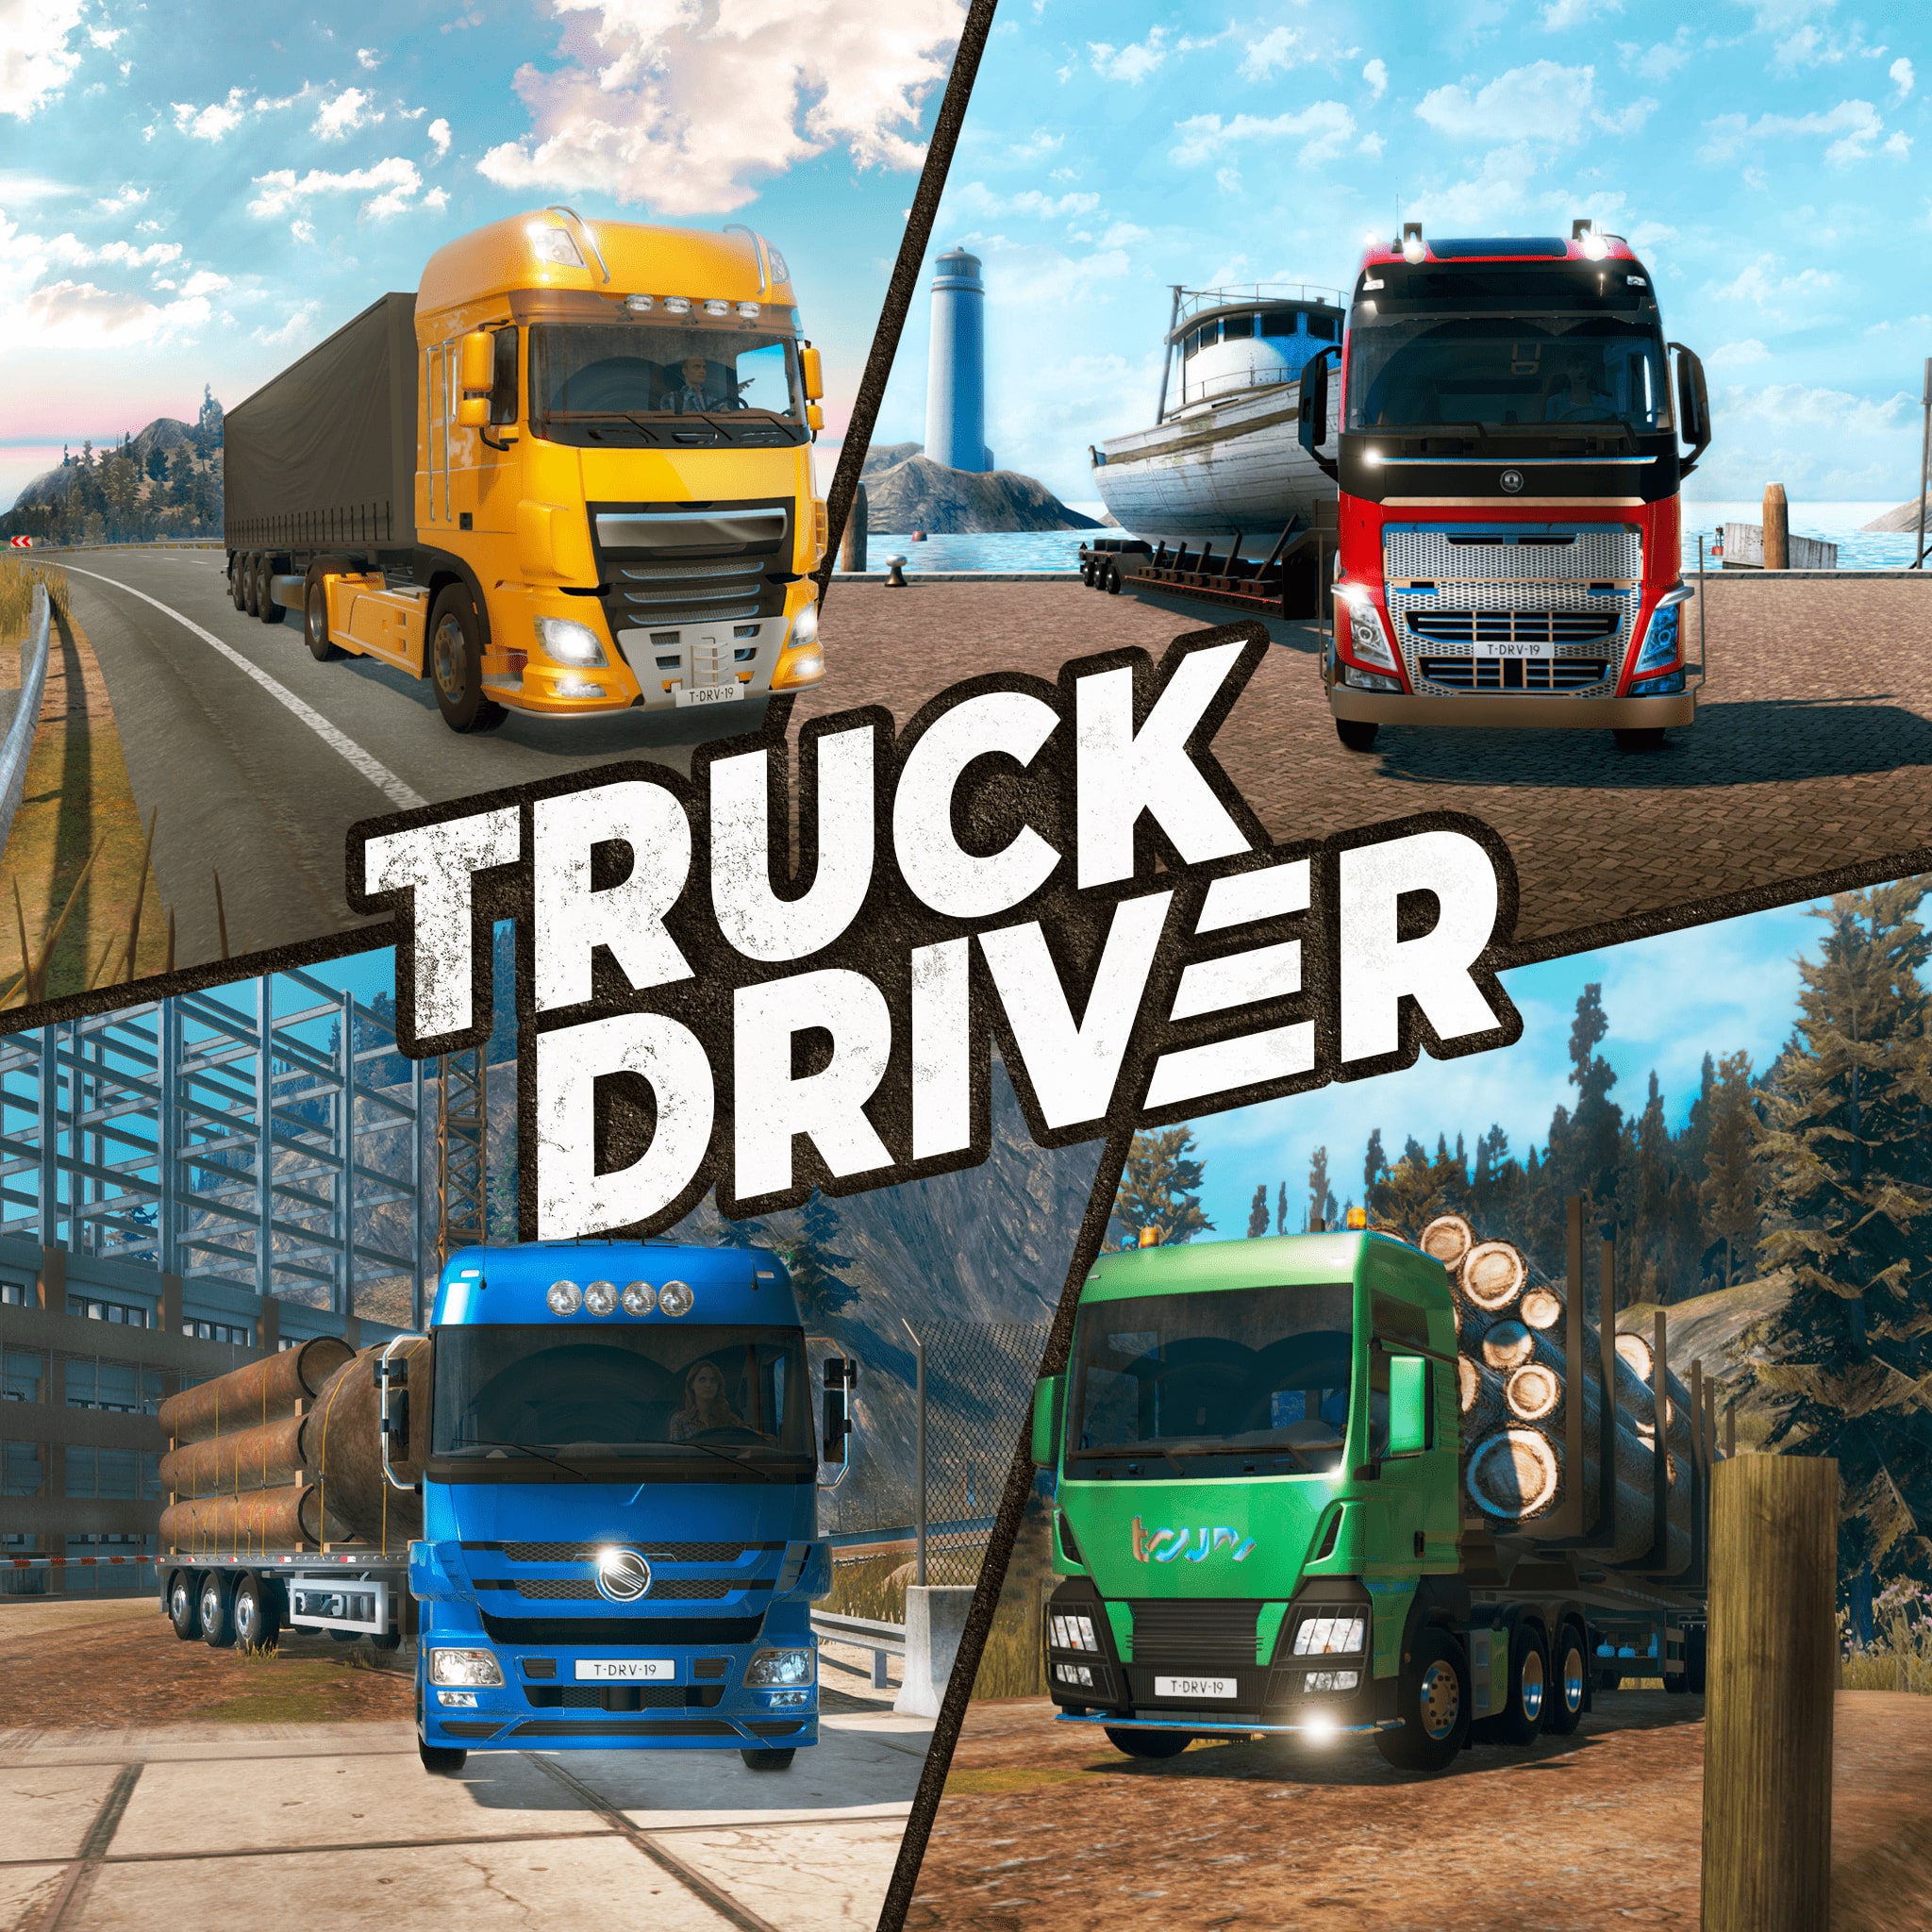 Truck Driver Para PS4 - Mídia Digital